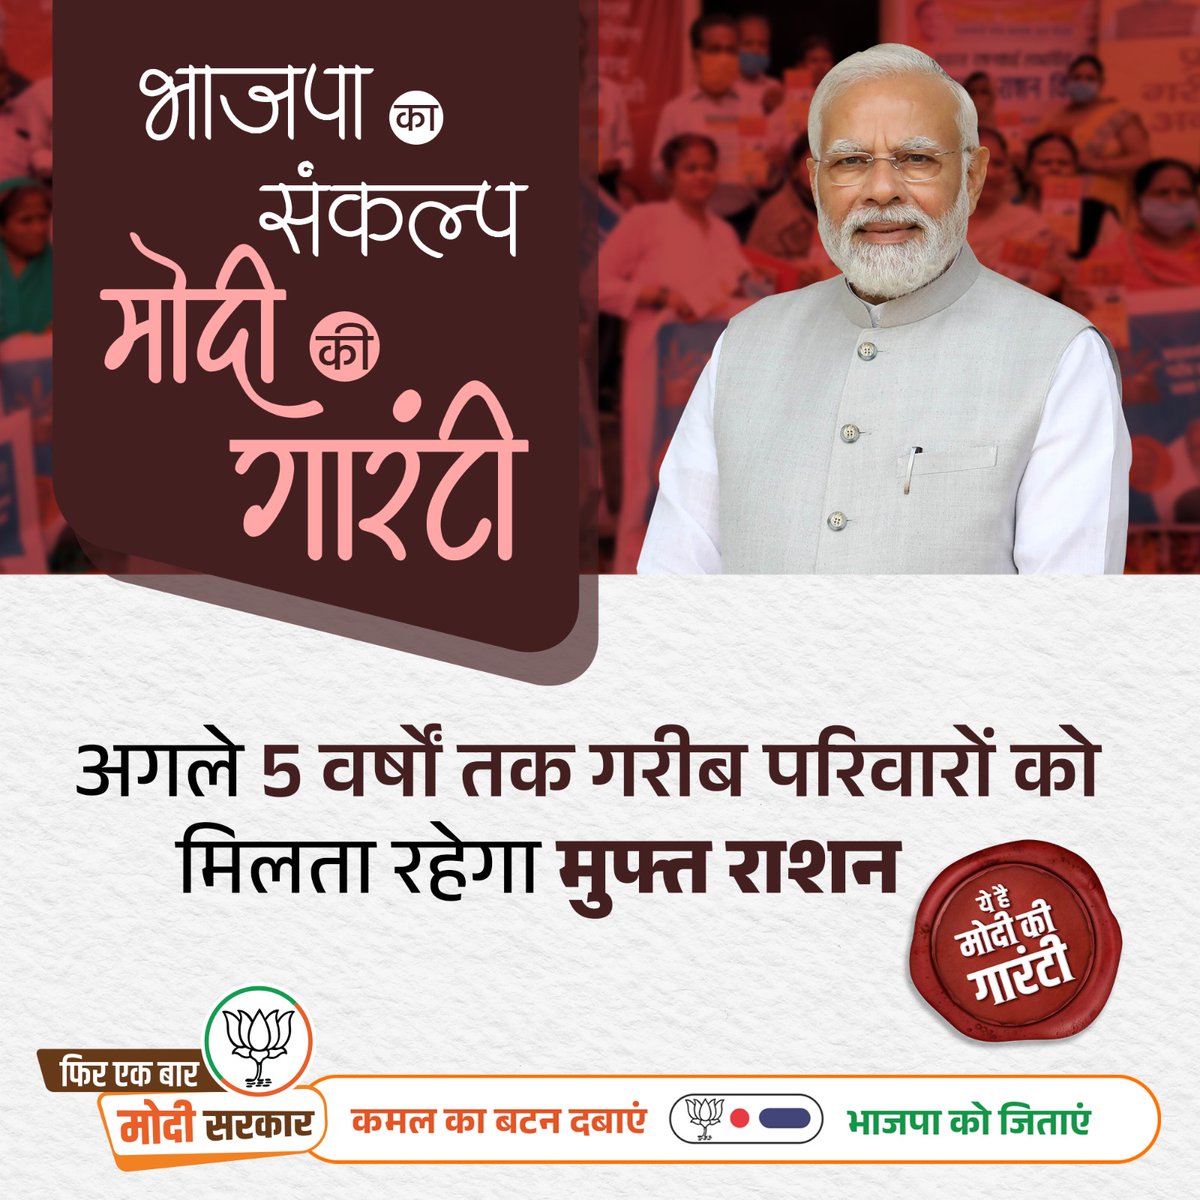 भाजपा का संकल्प #ModiKiGuarantee! अगले 5 वर्षों तक गरीब परिवारों को मिलता रहेगा मुफ्त राशन।